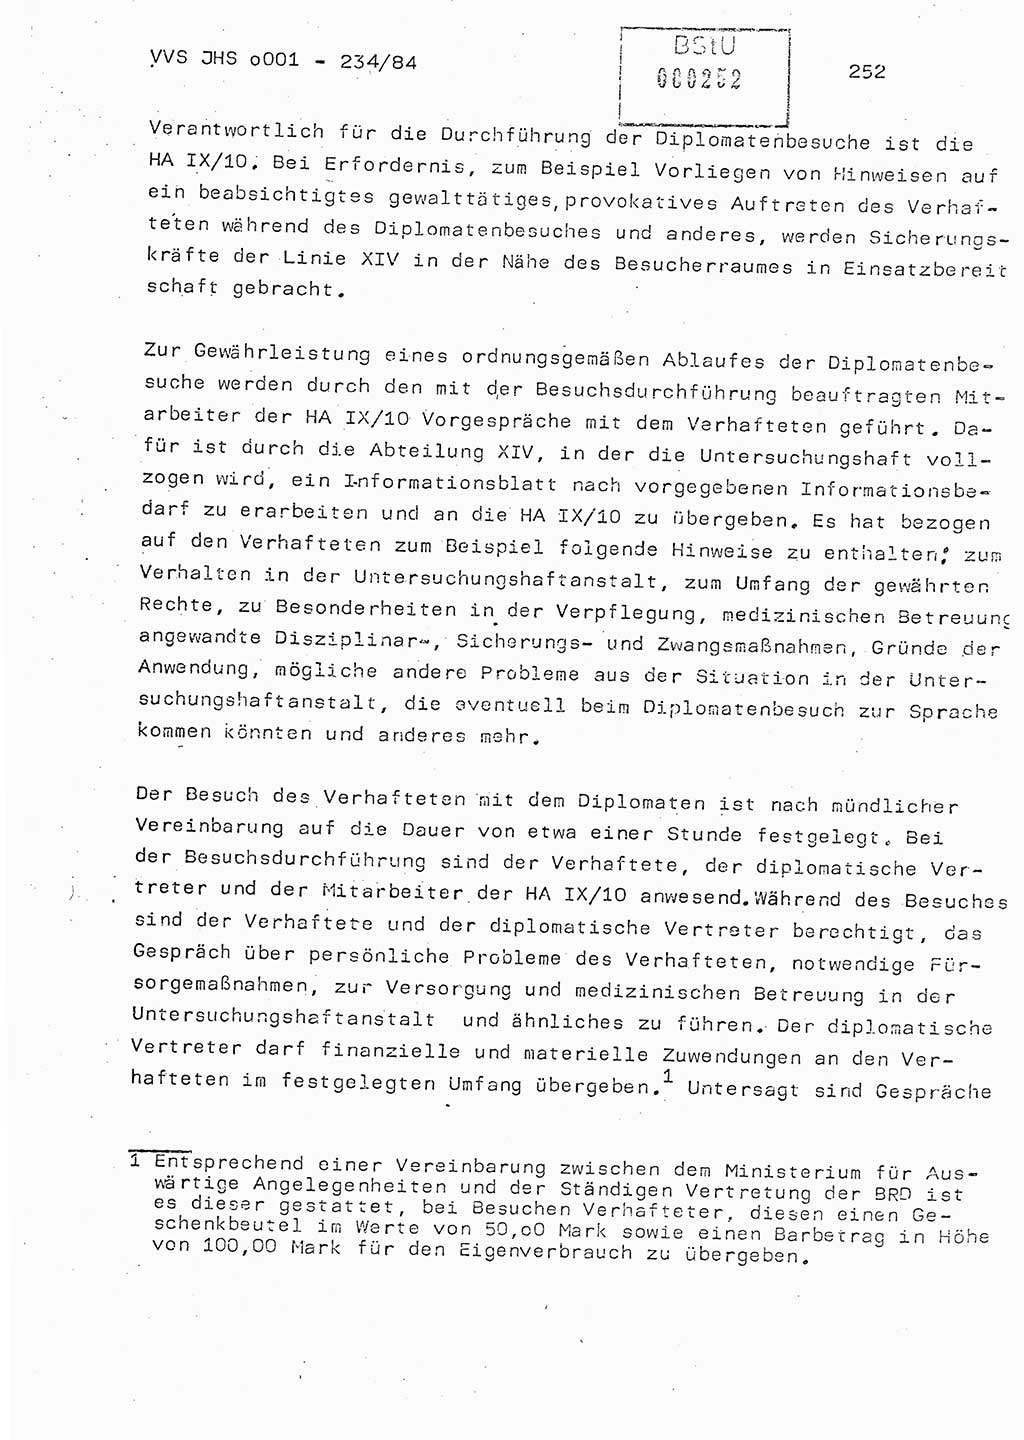 Dissertation Oberst Siegfried Rataizick (Abt. ⅩⅣ), Oberstleutnant Volkmar Heinz (Abt. ⅩⅣ), Oberstleutnant Werner Stein (HA Ⅸ), Hauptmann Heinz Conrad (JHS), Ministerium für Staatssicherheit (MfS) [Deutsche Demokratische Republik (DDR)], Juristische Hochschule (JHS), Vertrauliche Verschlußsache (VVS) o001-234/84, Potsdam 1984, Seite 252 (Diss. MfS DDR JHS VVS o001-234/84 1984, S. 252)